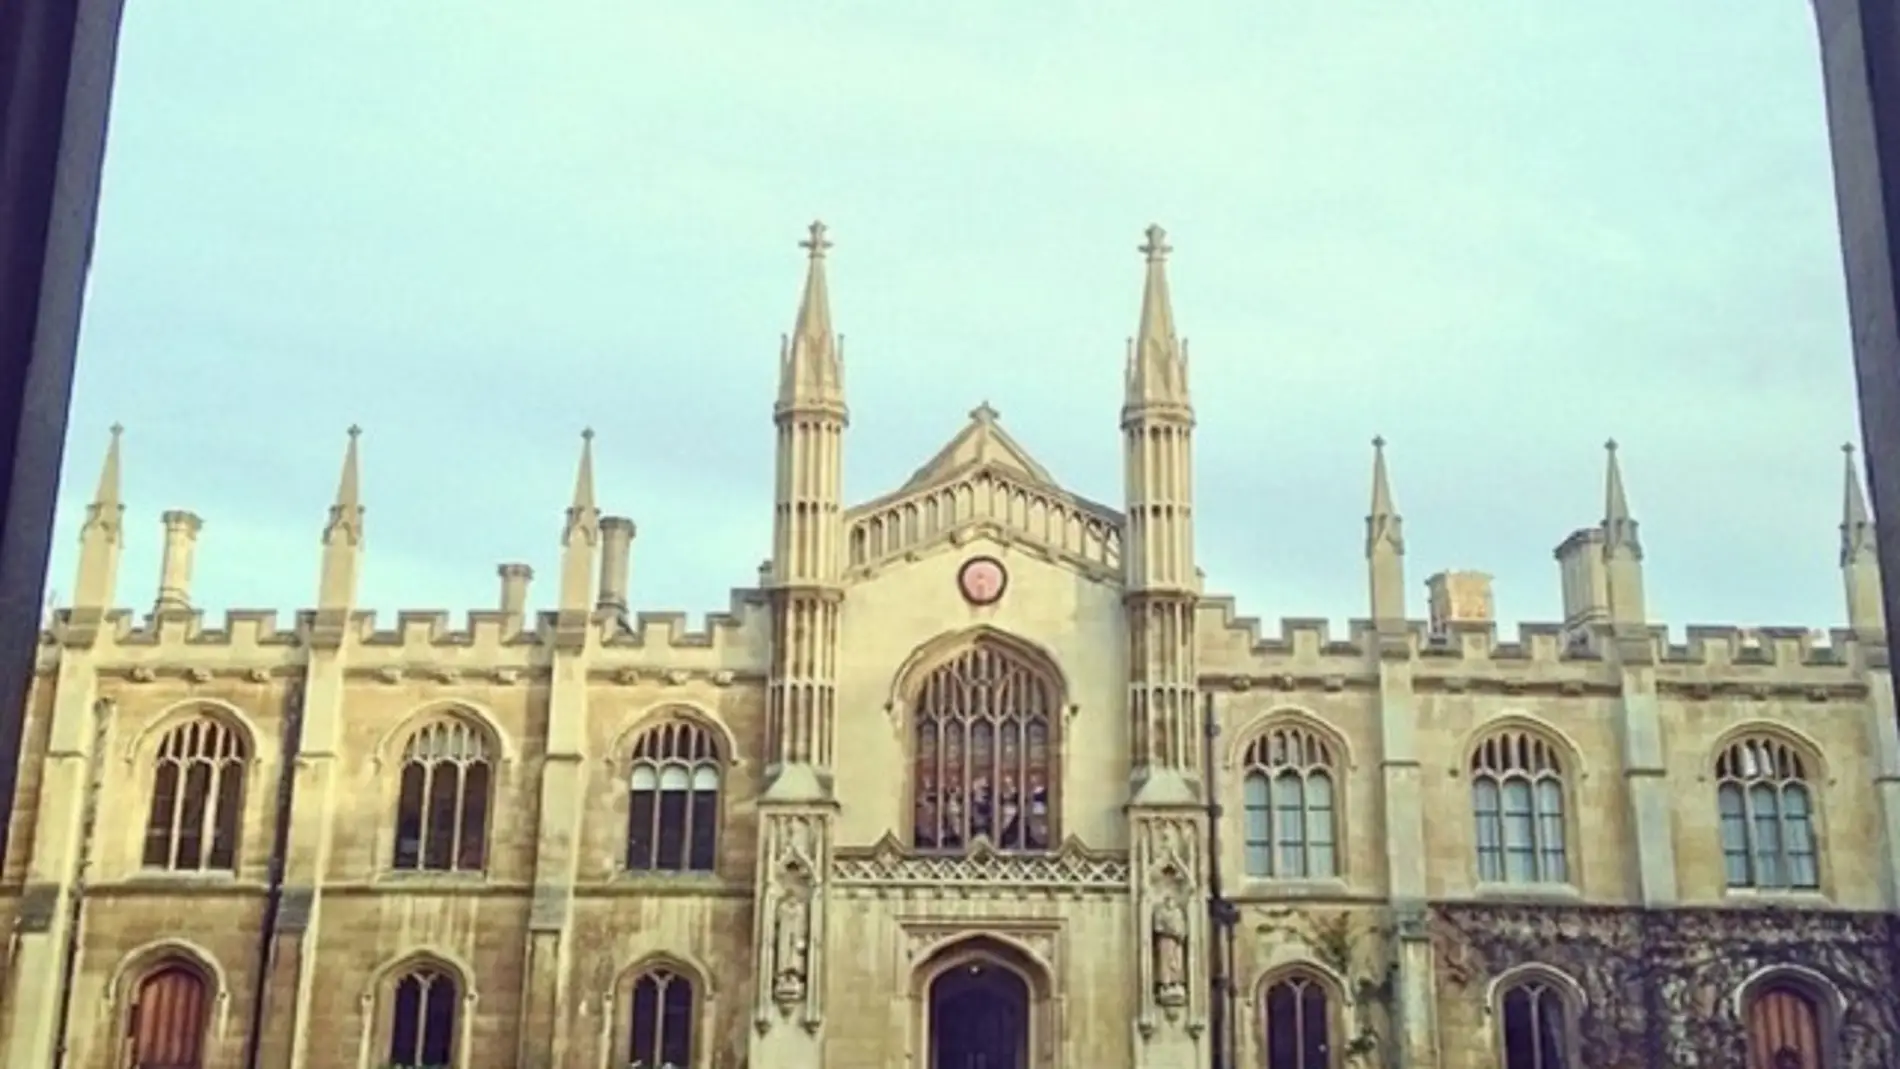 Cambridge retratada como si fuera Howards